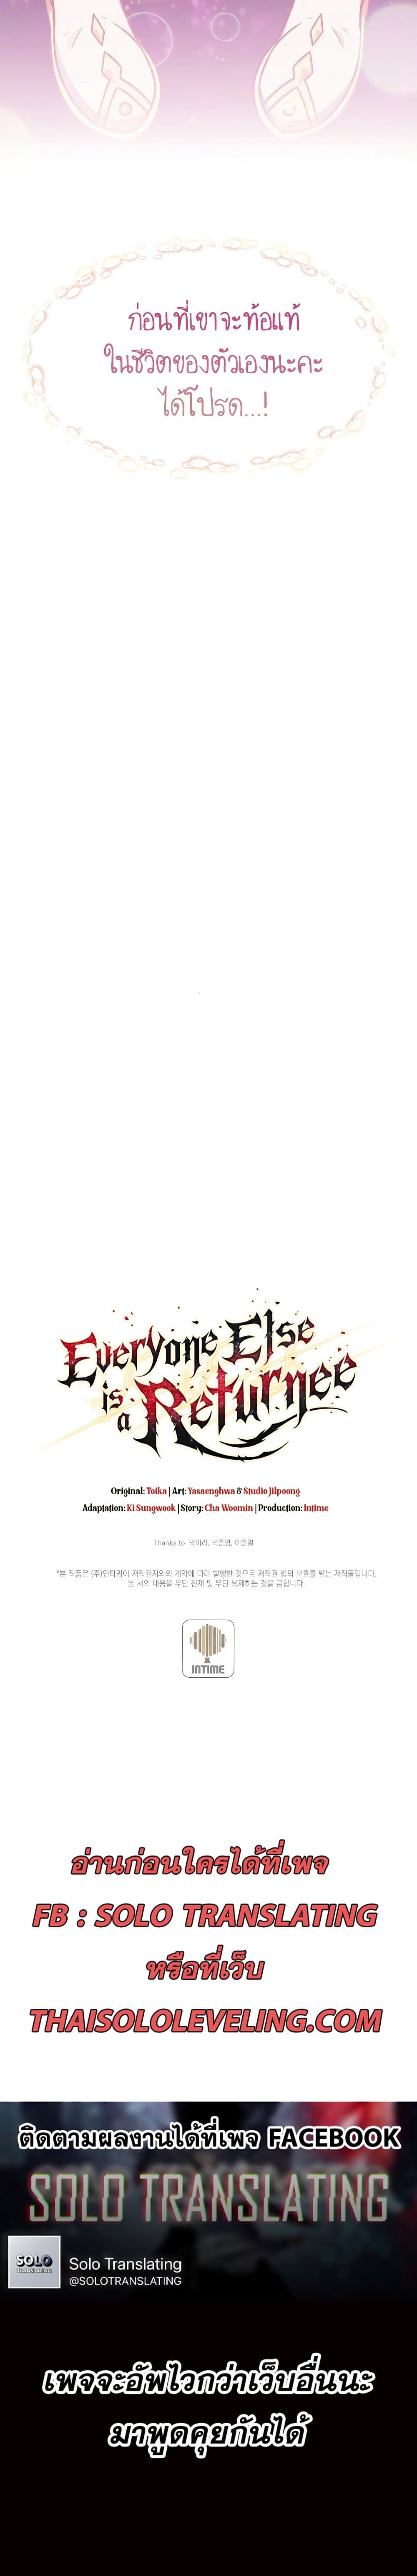 Everyone Else is A Returnee  2 แปลไทย